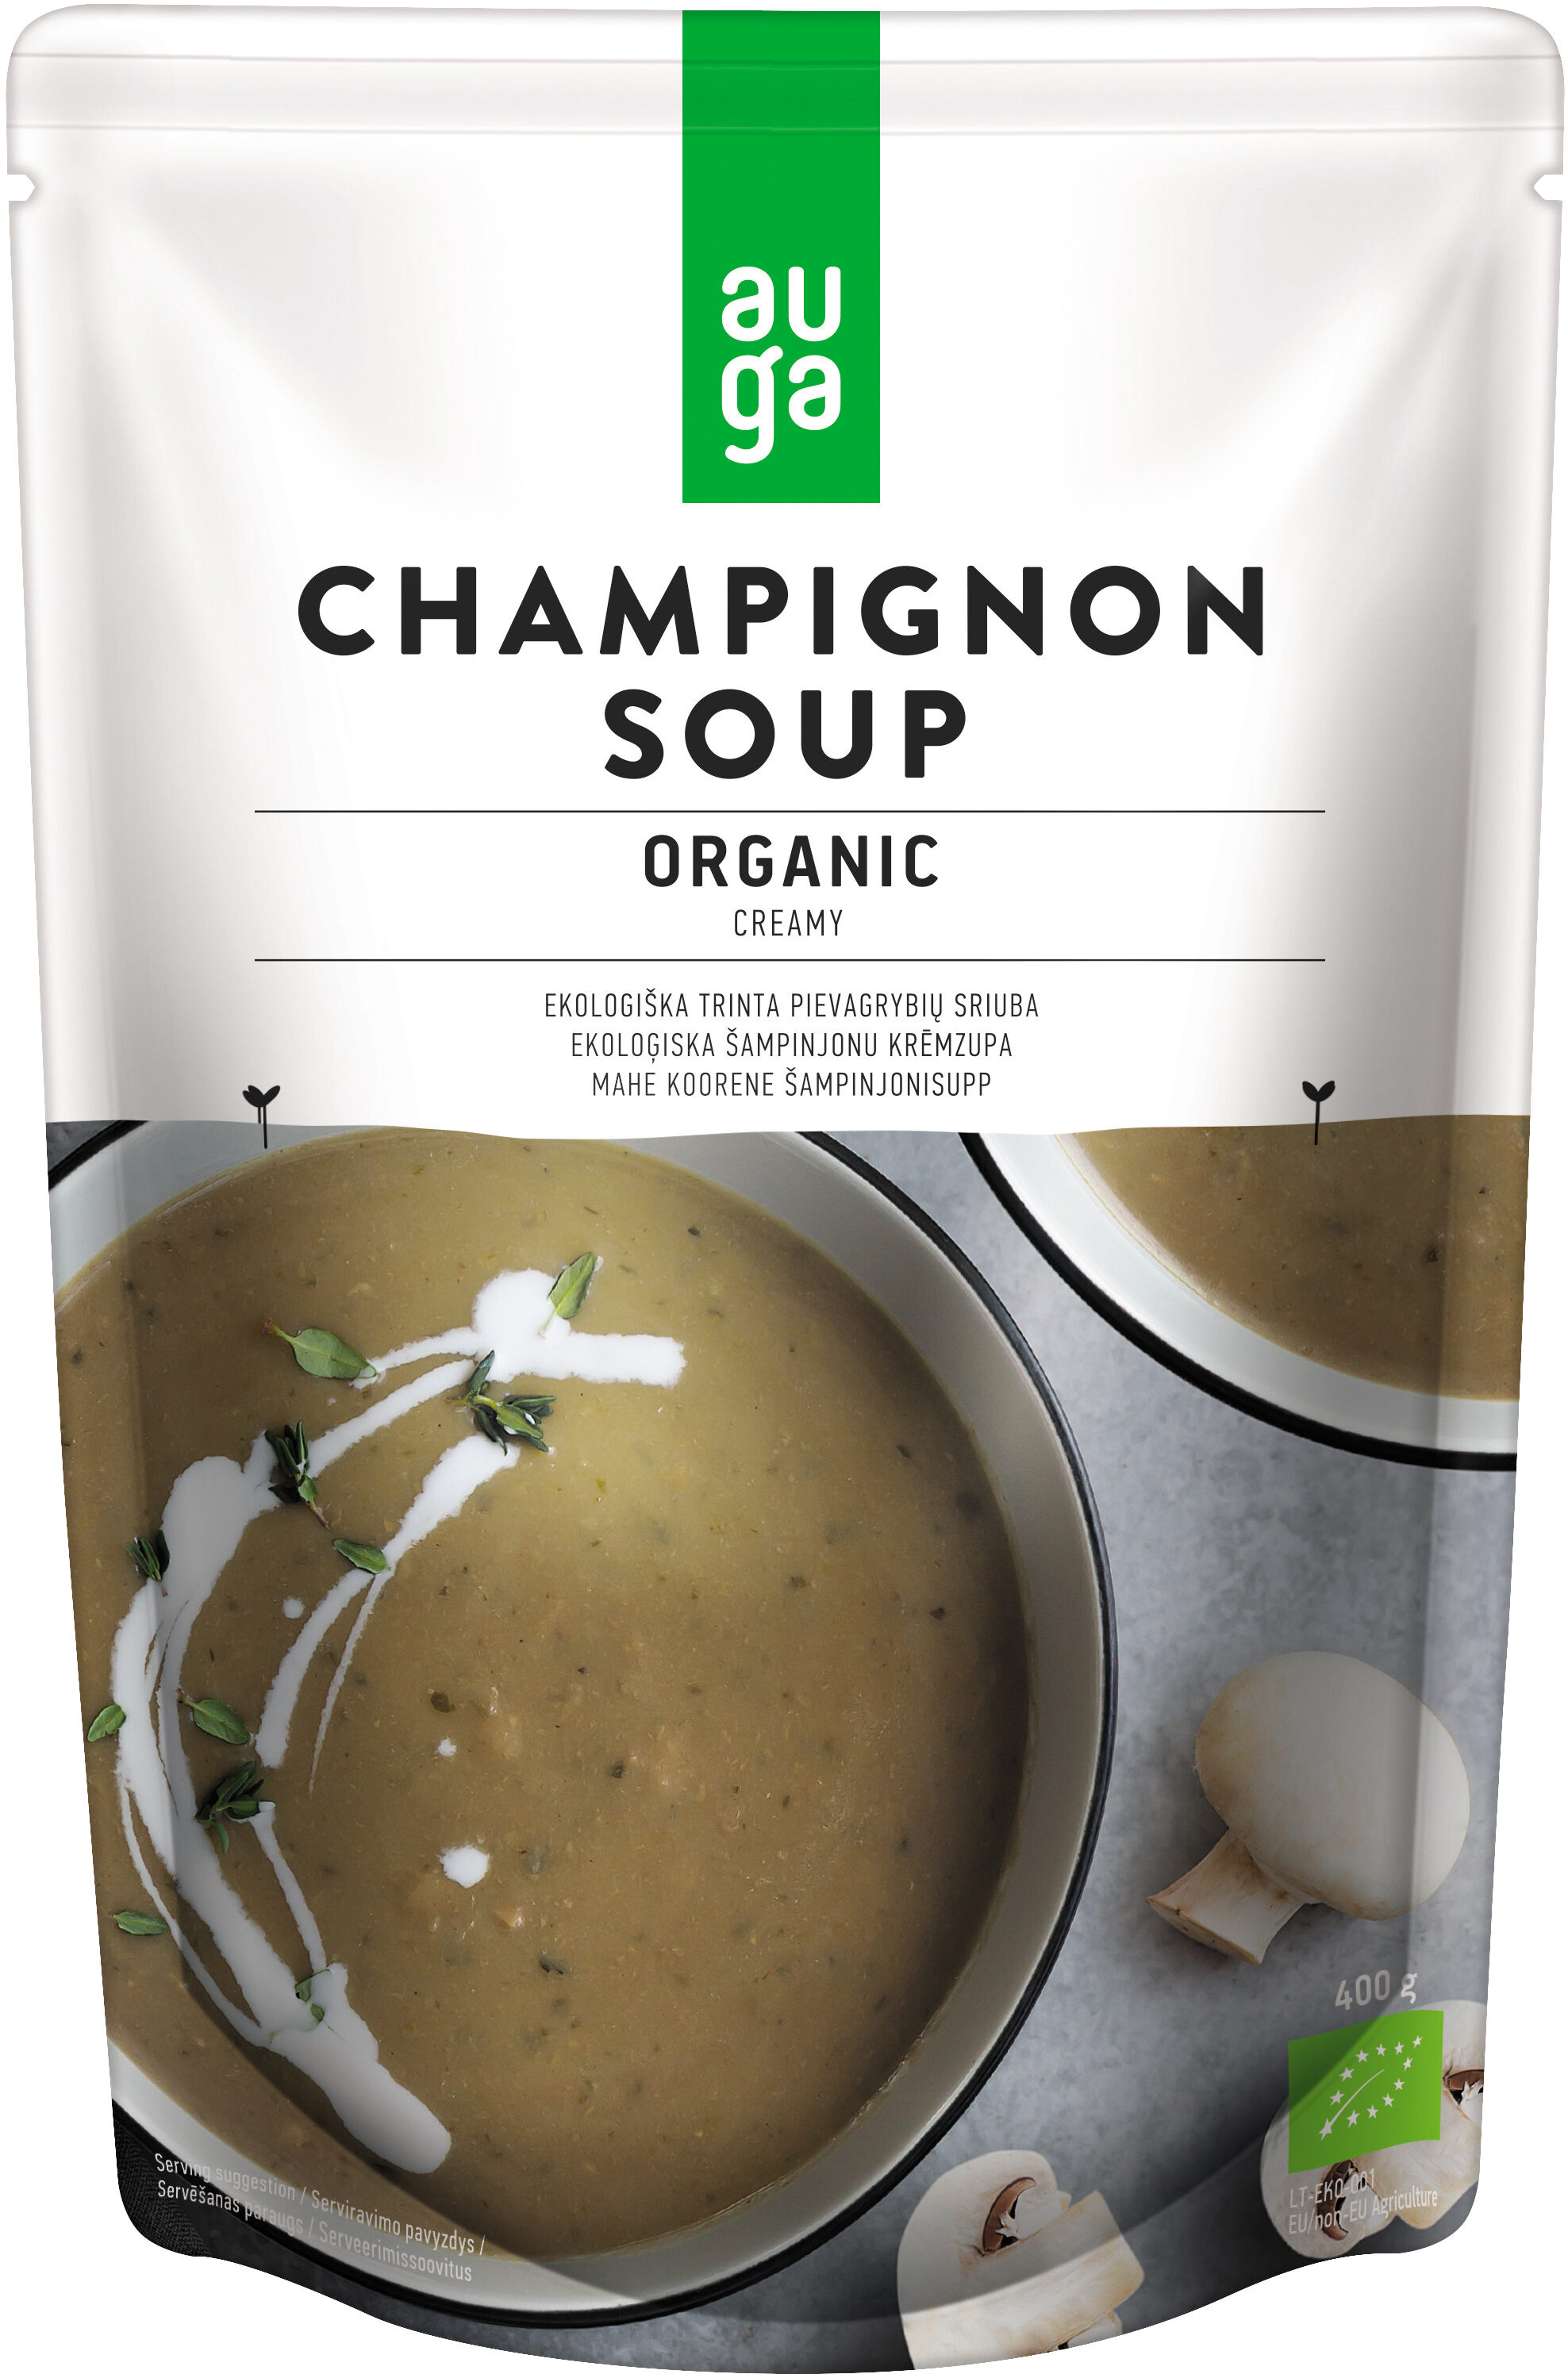 Champignon Soup - Product - en